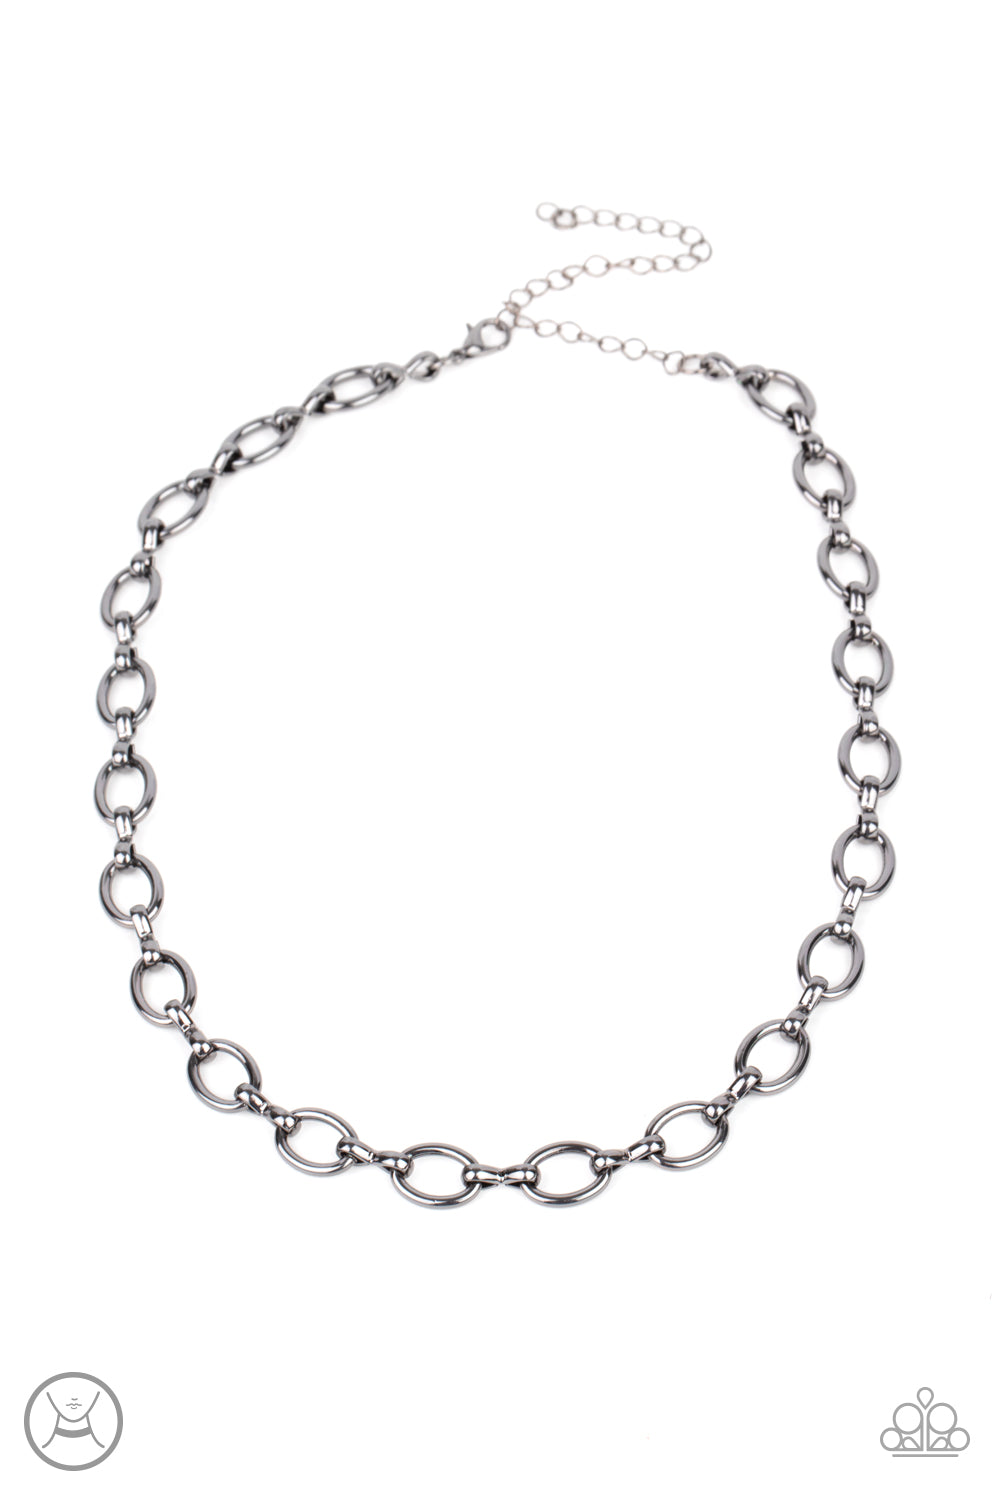 Craveable Couture - Black (Gunmetal) Choker Necklace